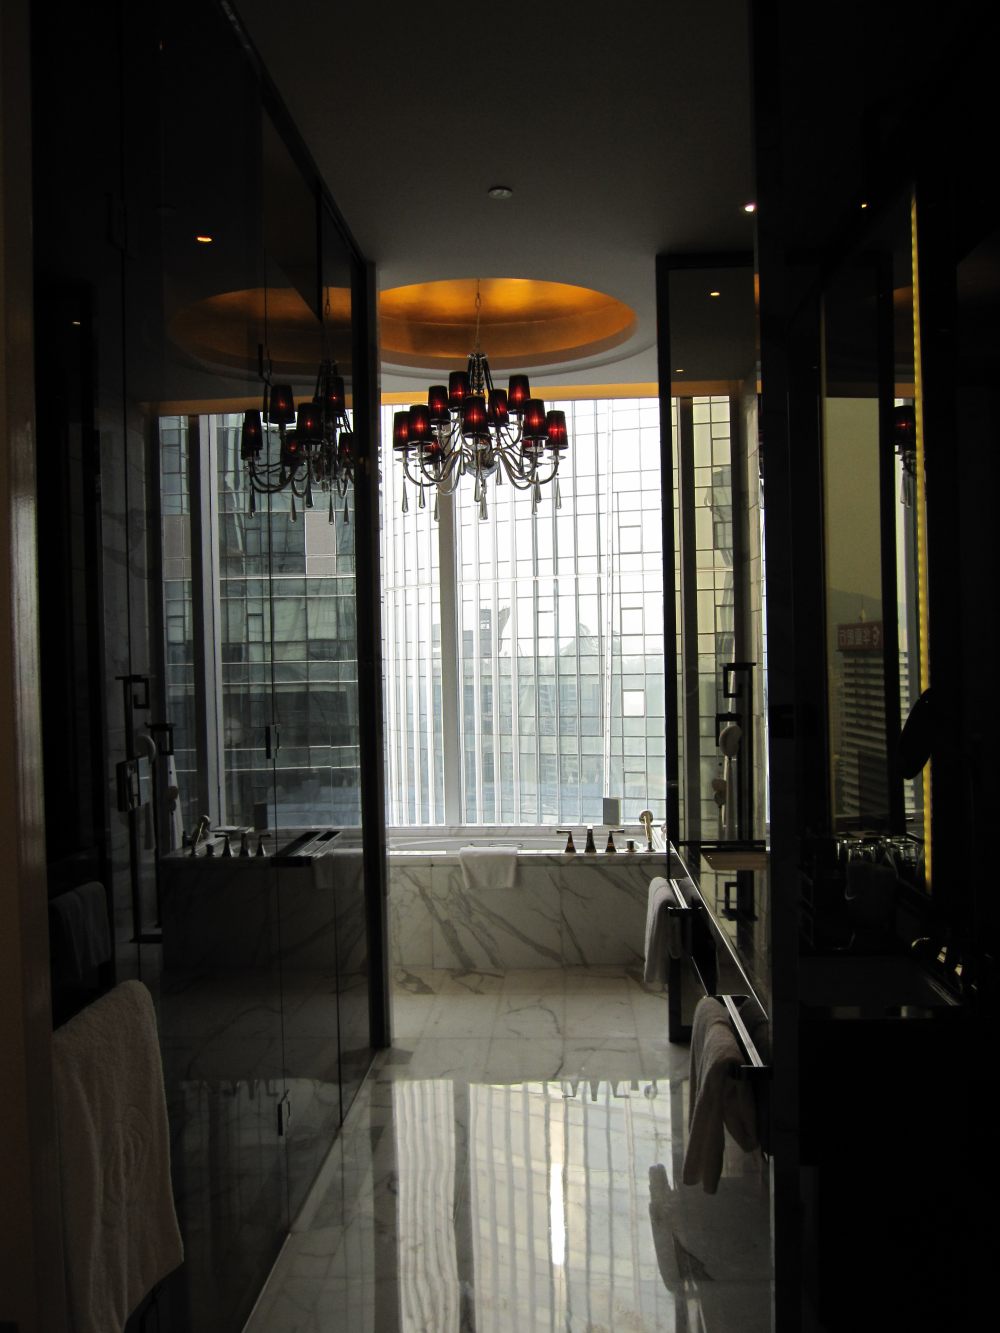 广州圣丰索菲特大酒店(Sofitel Guangzhou )(CCD)(20130702更新)_IMG_1513.JPG